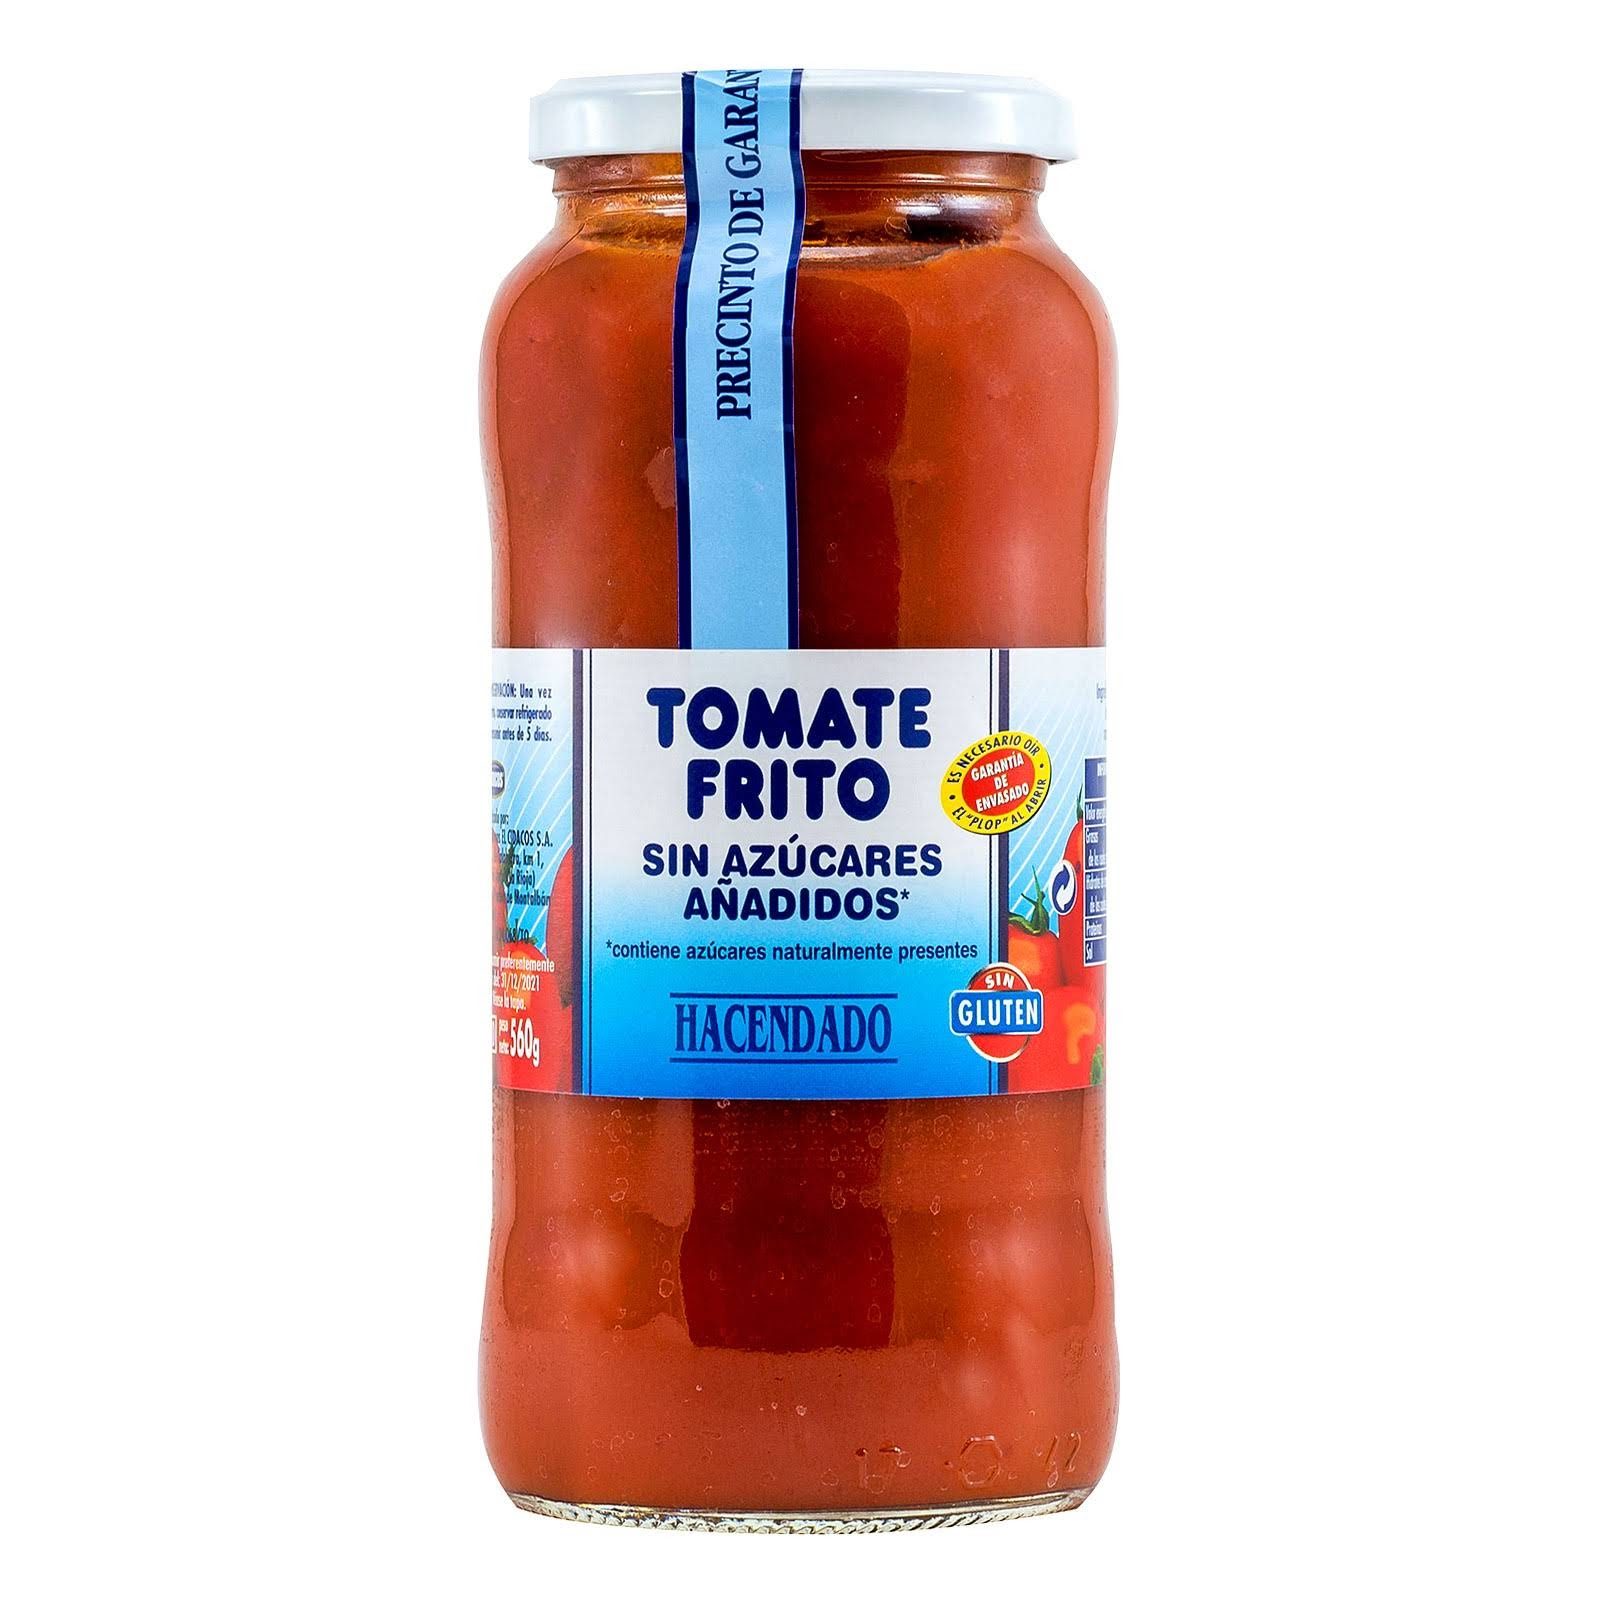 tomate-frito-sin-azucares-anadidos-hacendado-mercadona-1-1647136